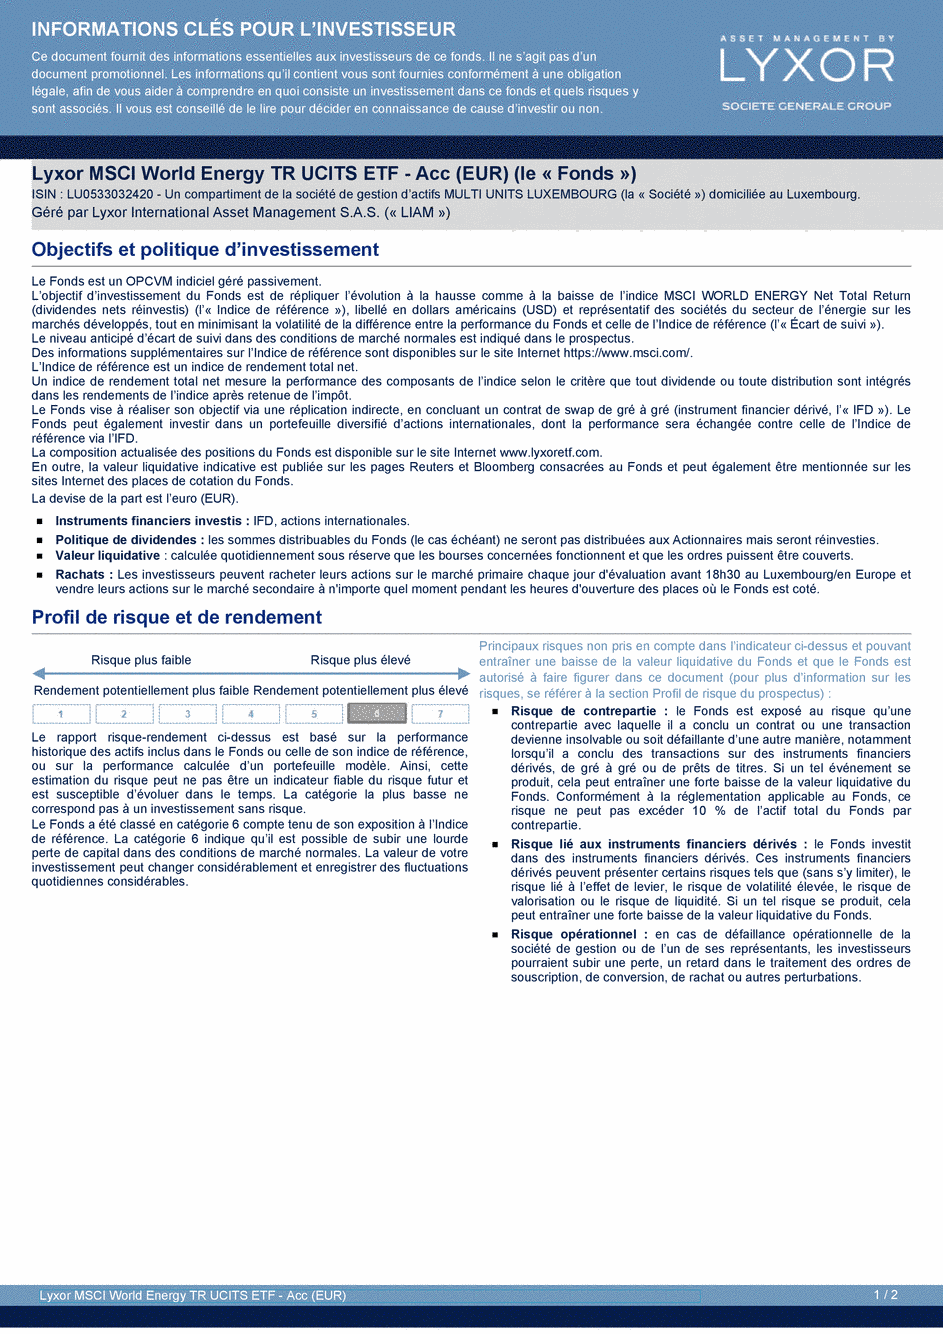 DICI Lyxor MSCI World Energy TR UCITS ETF - Acc (EUR) - 10/07/2020 - Français